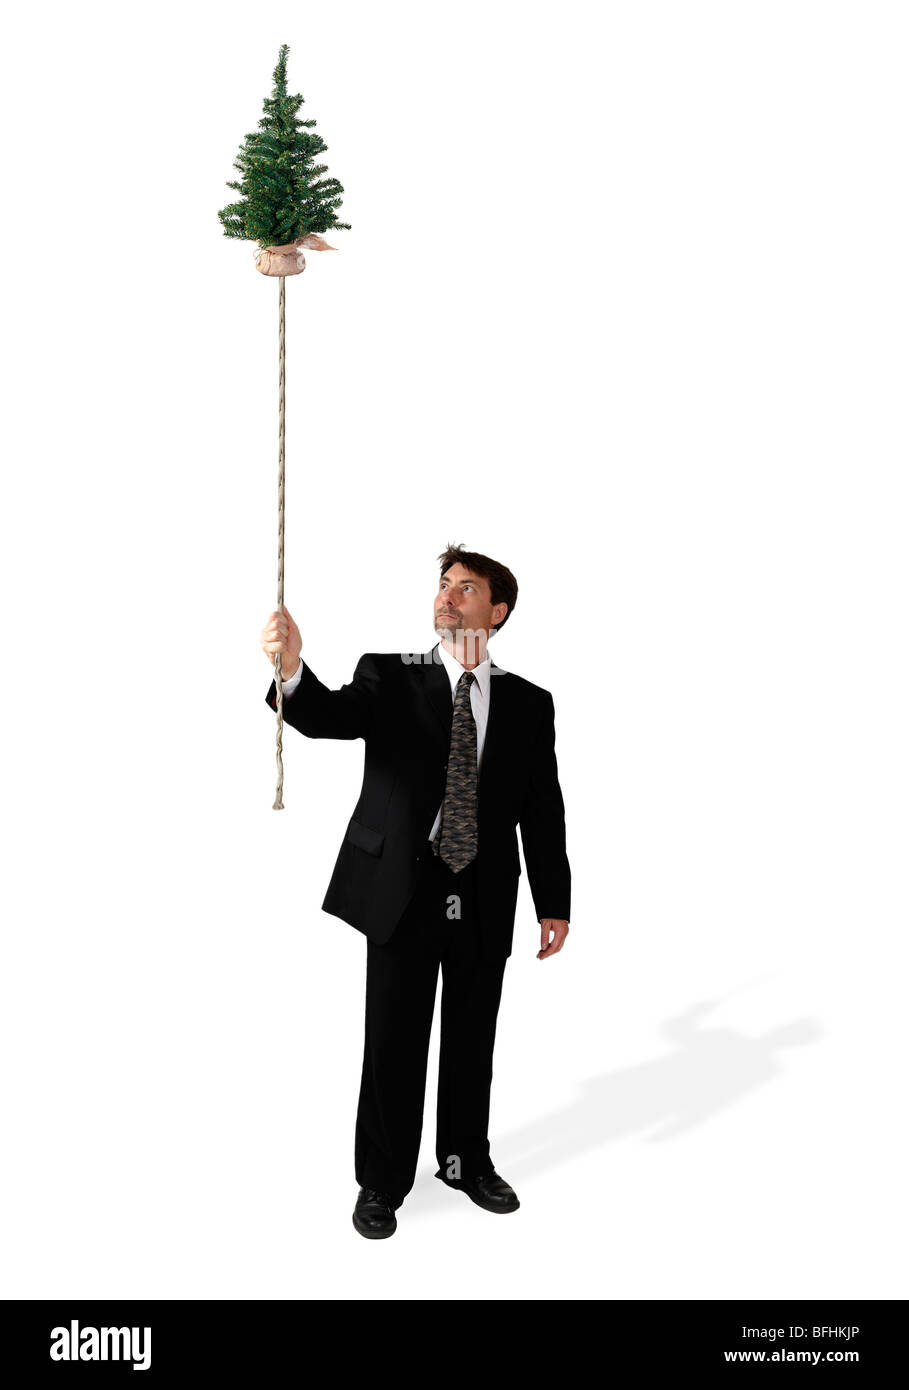 Geschäftsmann hält einen schwimmende Bäumchen Baum an einem Seil befestigt. Stockfoto